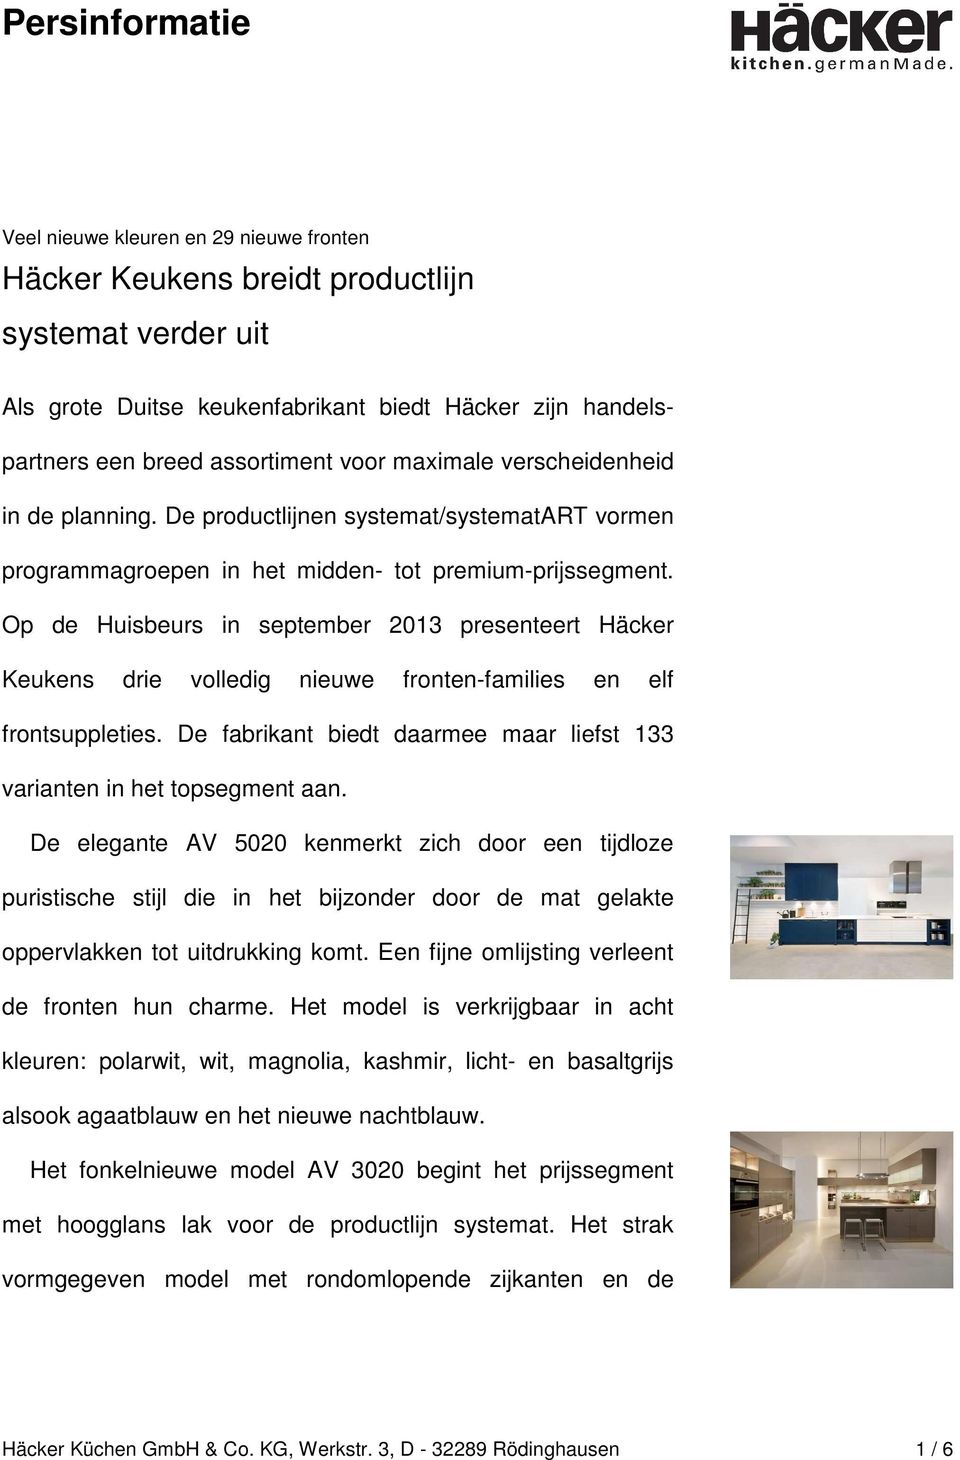 Op de Huisbeurs in september 2013 presenteert Häcker Keukens drie volledig nieuwe fronten-families en elf frontsuppleties. De fabrikant biedt daarmee maar liefst 133 varianten in het topsegment aan.